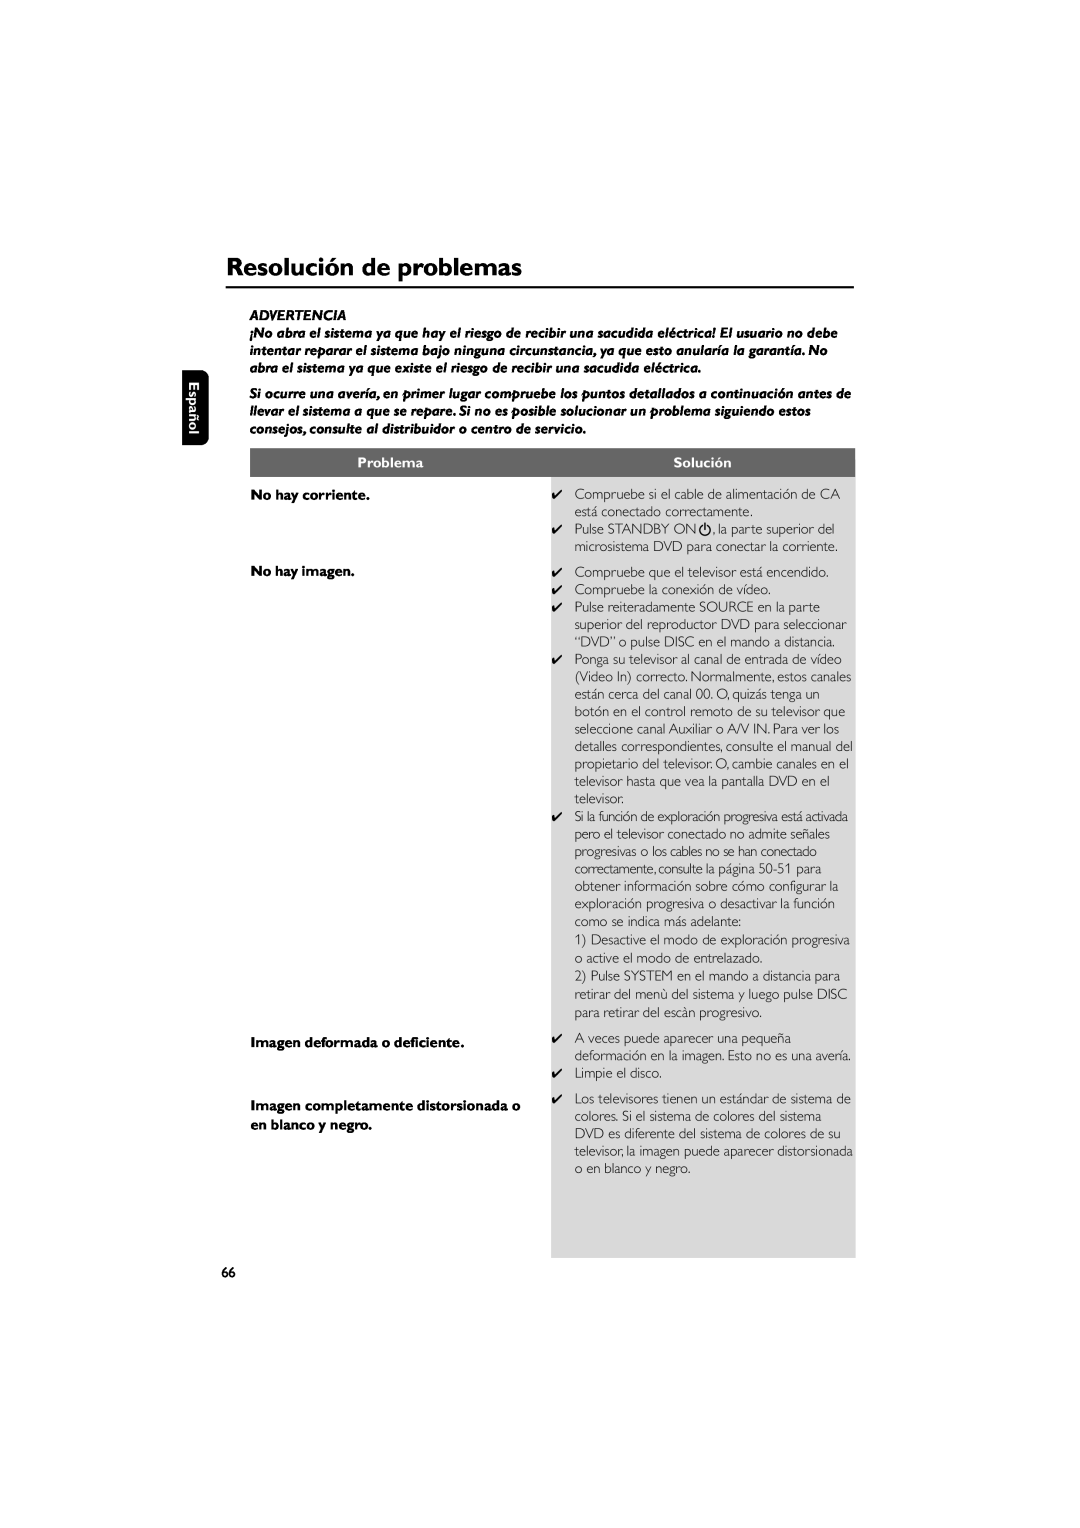 Philips MCD139 Resolución de problemas, Español, Problema, No hay corriente No hay imagen, Imagen deformada o deficiente 